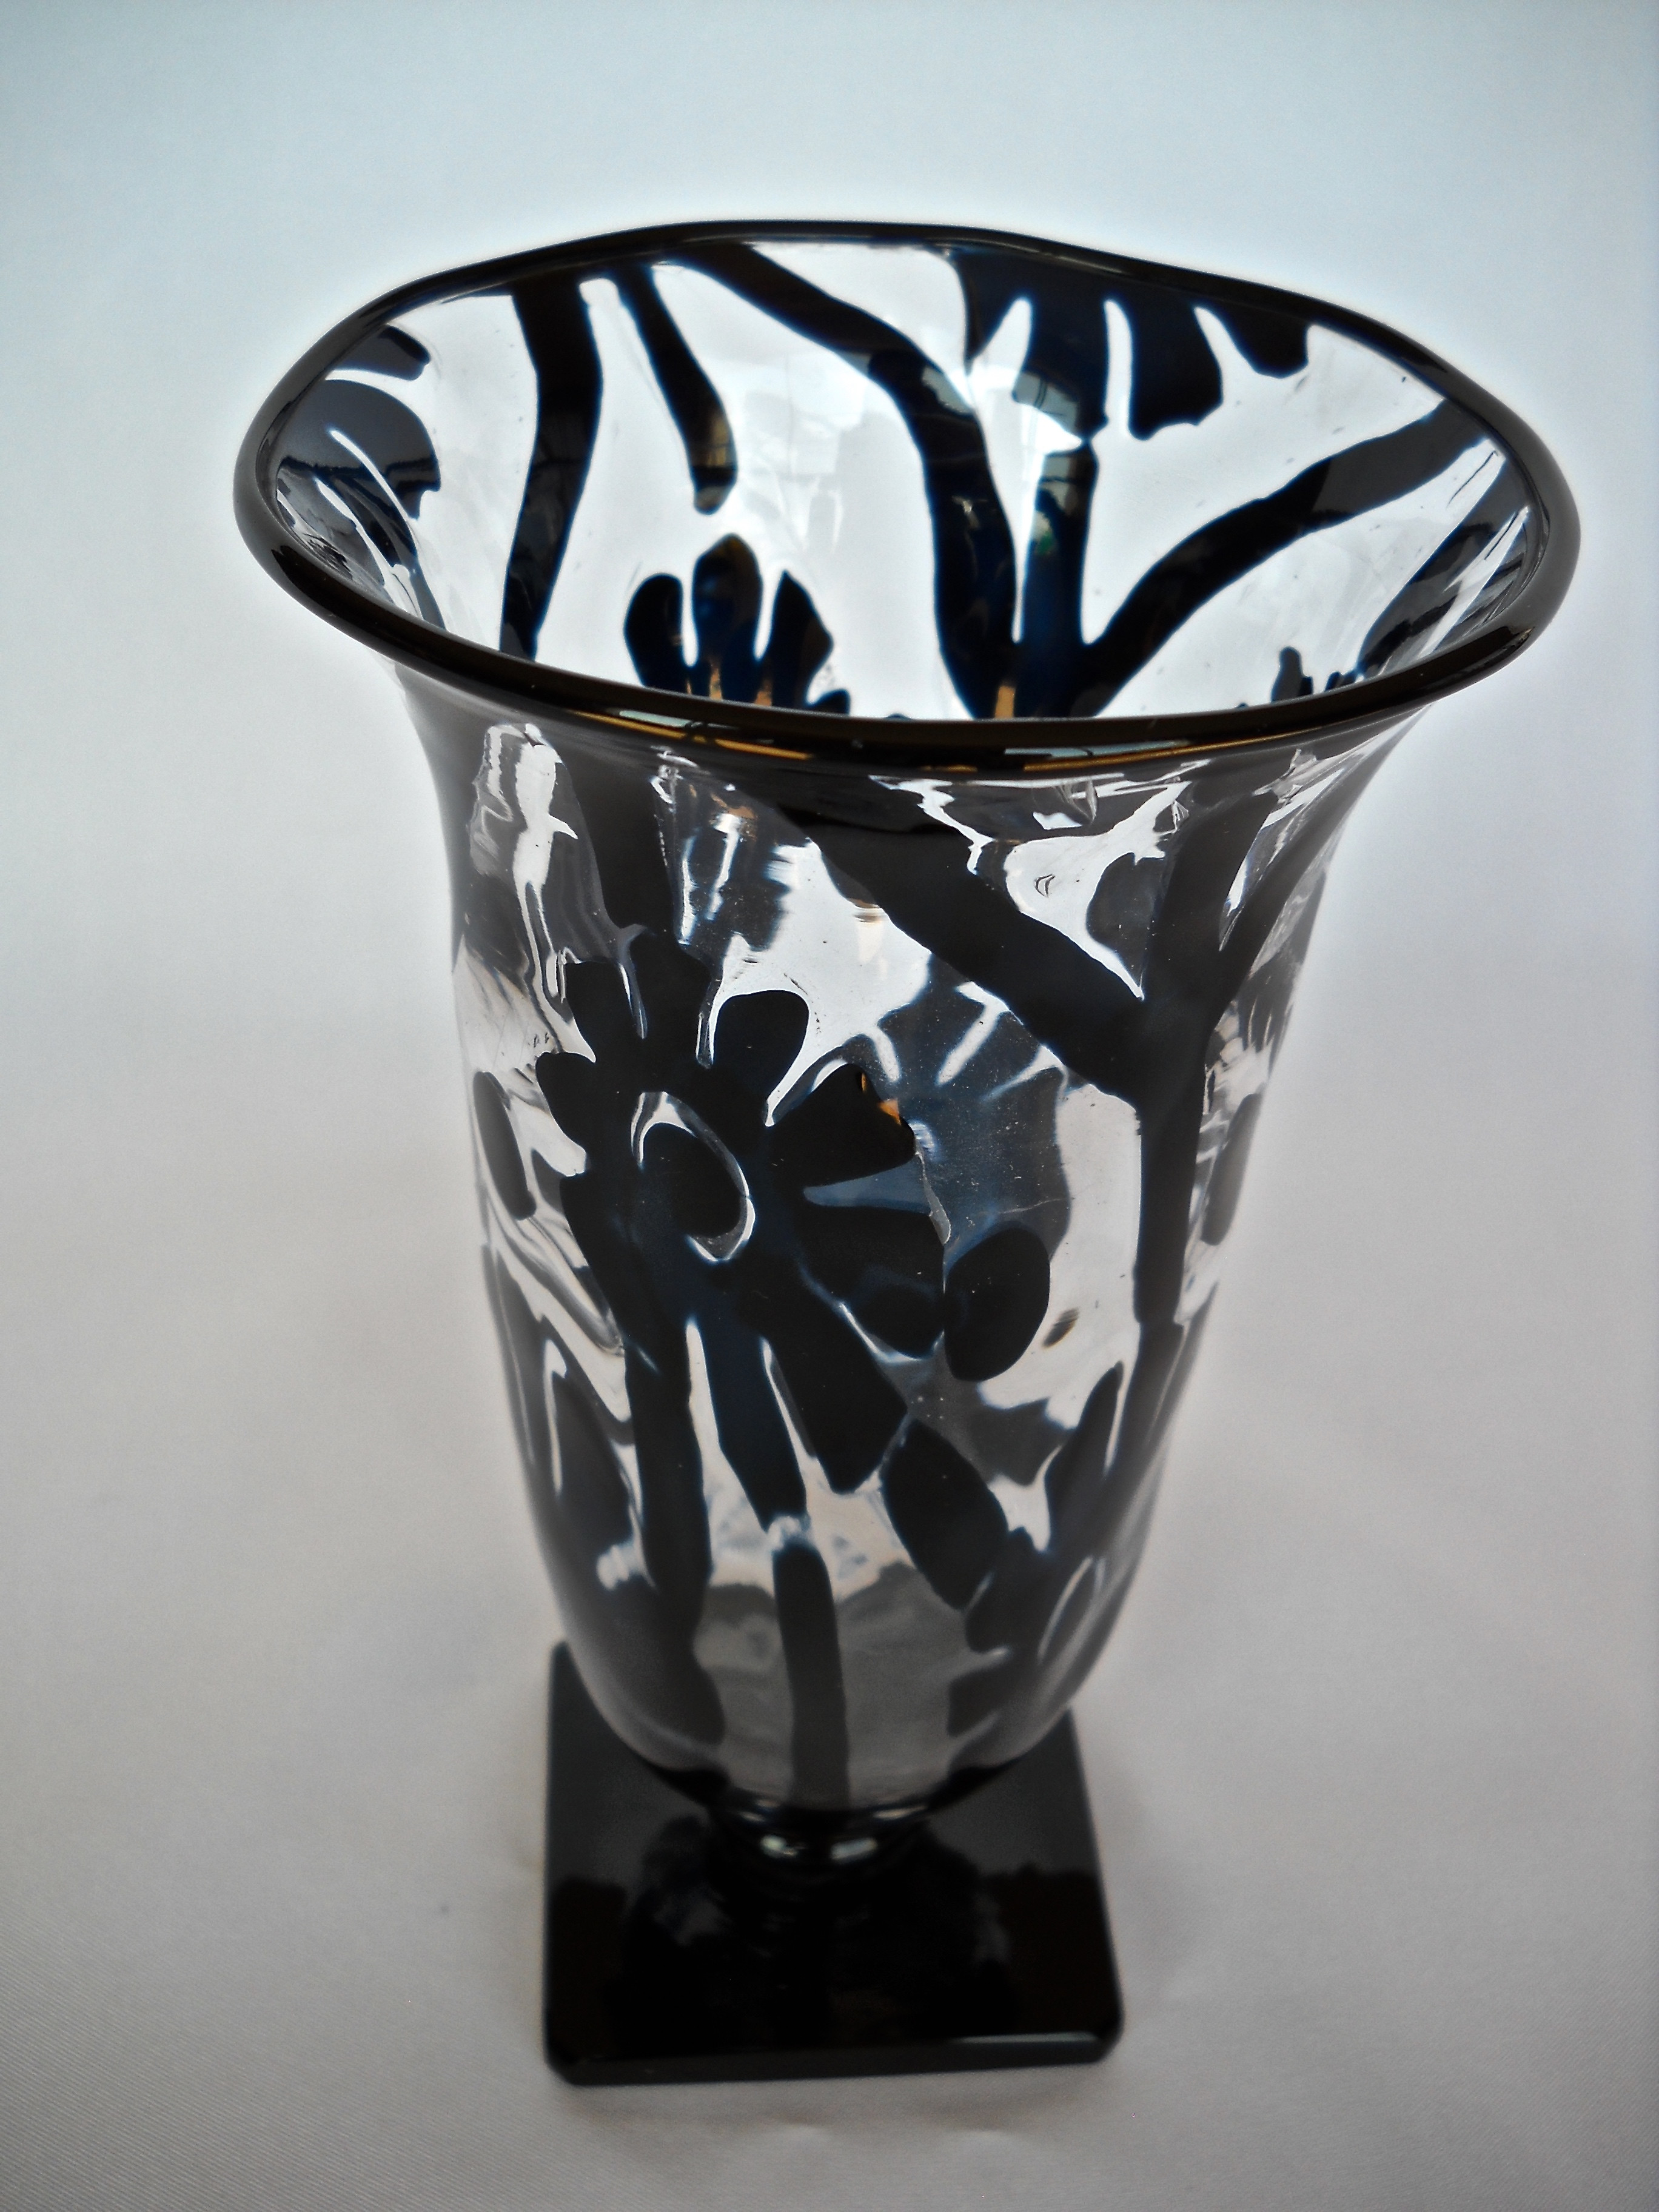 15 Stunning Steuben Vase Value 2024 free download steuben vase value of carder steuben club shape index results with carder steuben vase 7060